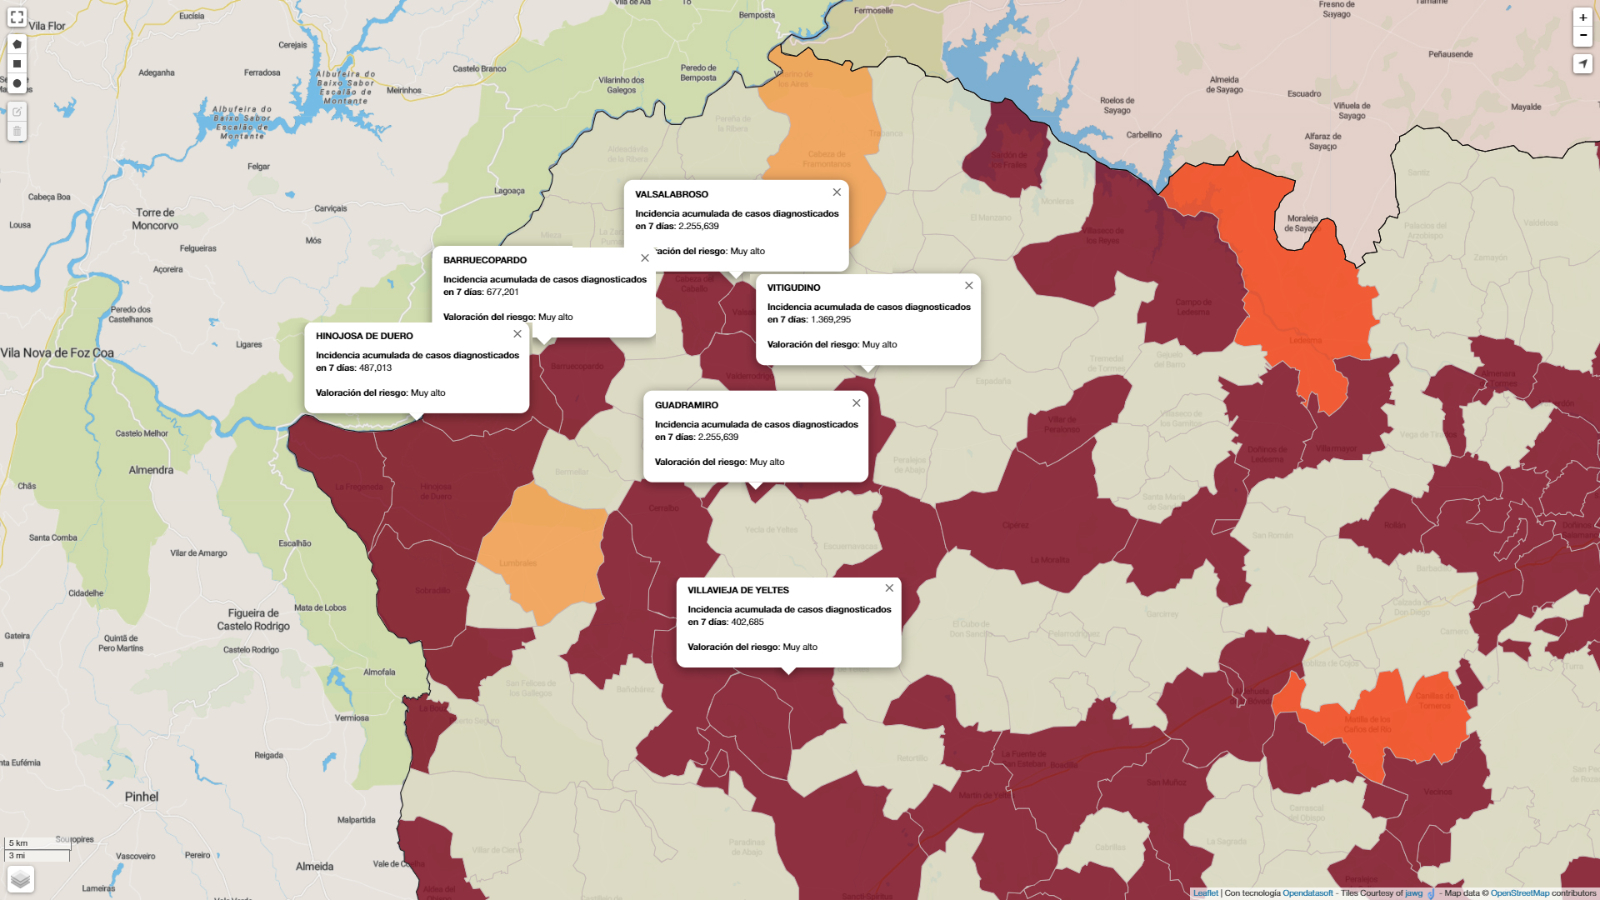   Mapa de incidencia de riesgo a 7 días con los municipios que presentan mayor número de contagios / INFOGRAFÍA: CORRAL (fuente JCyL)